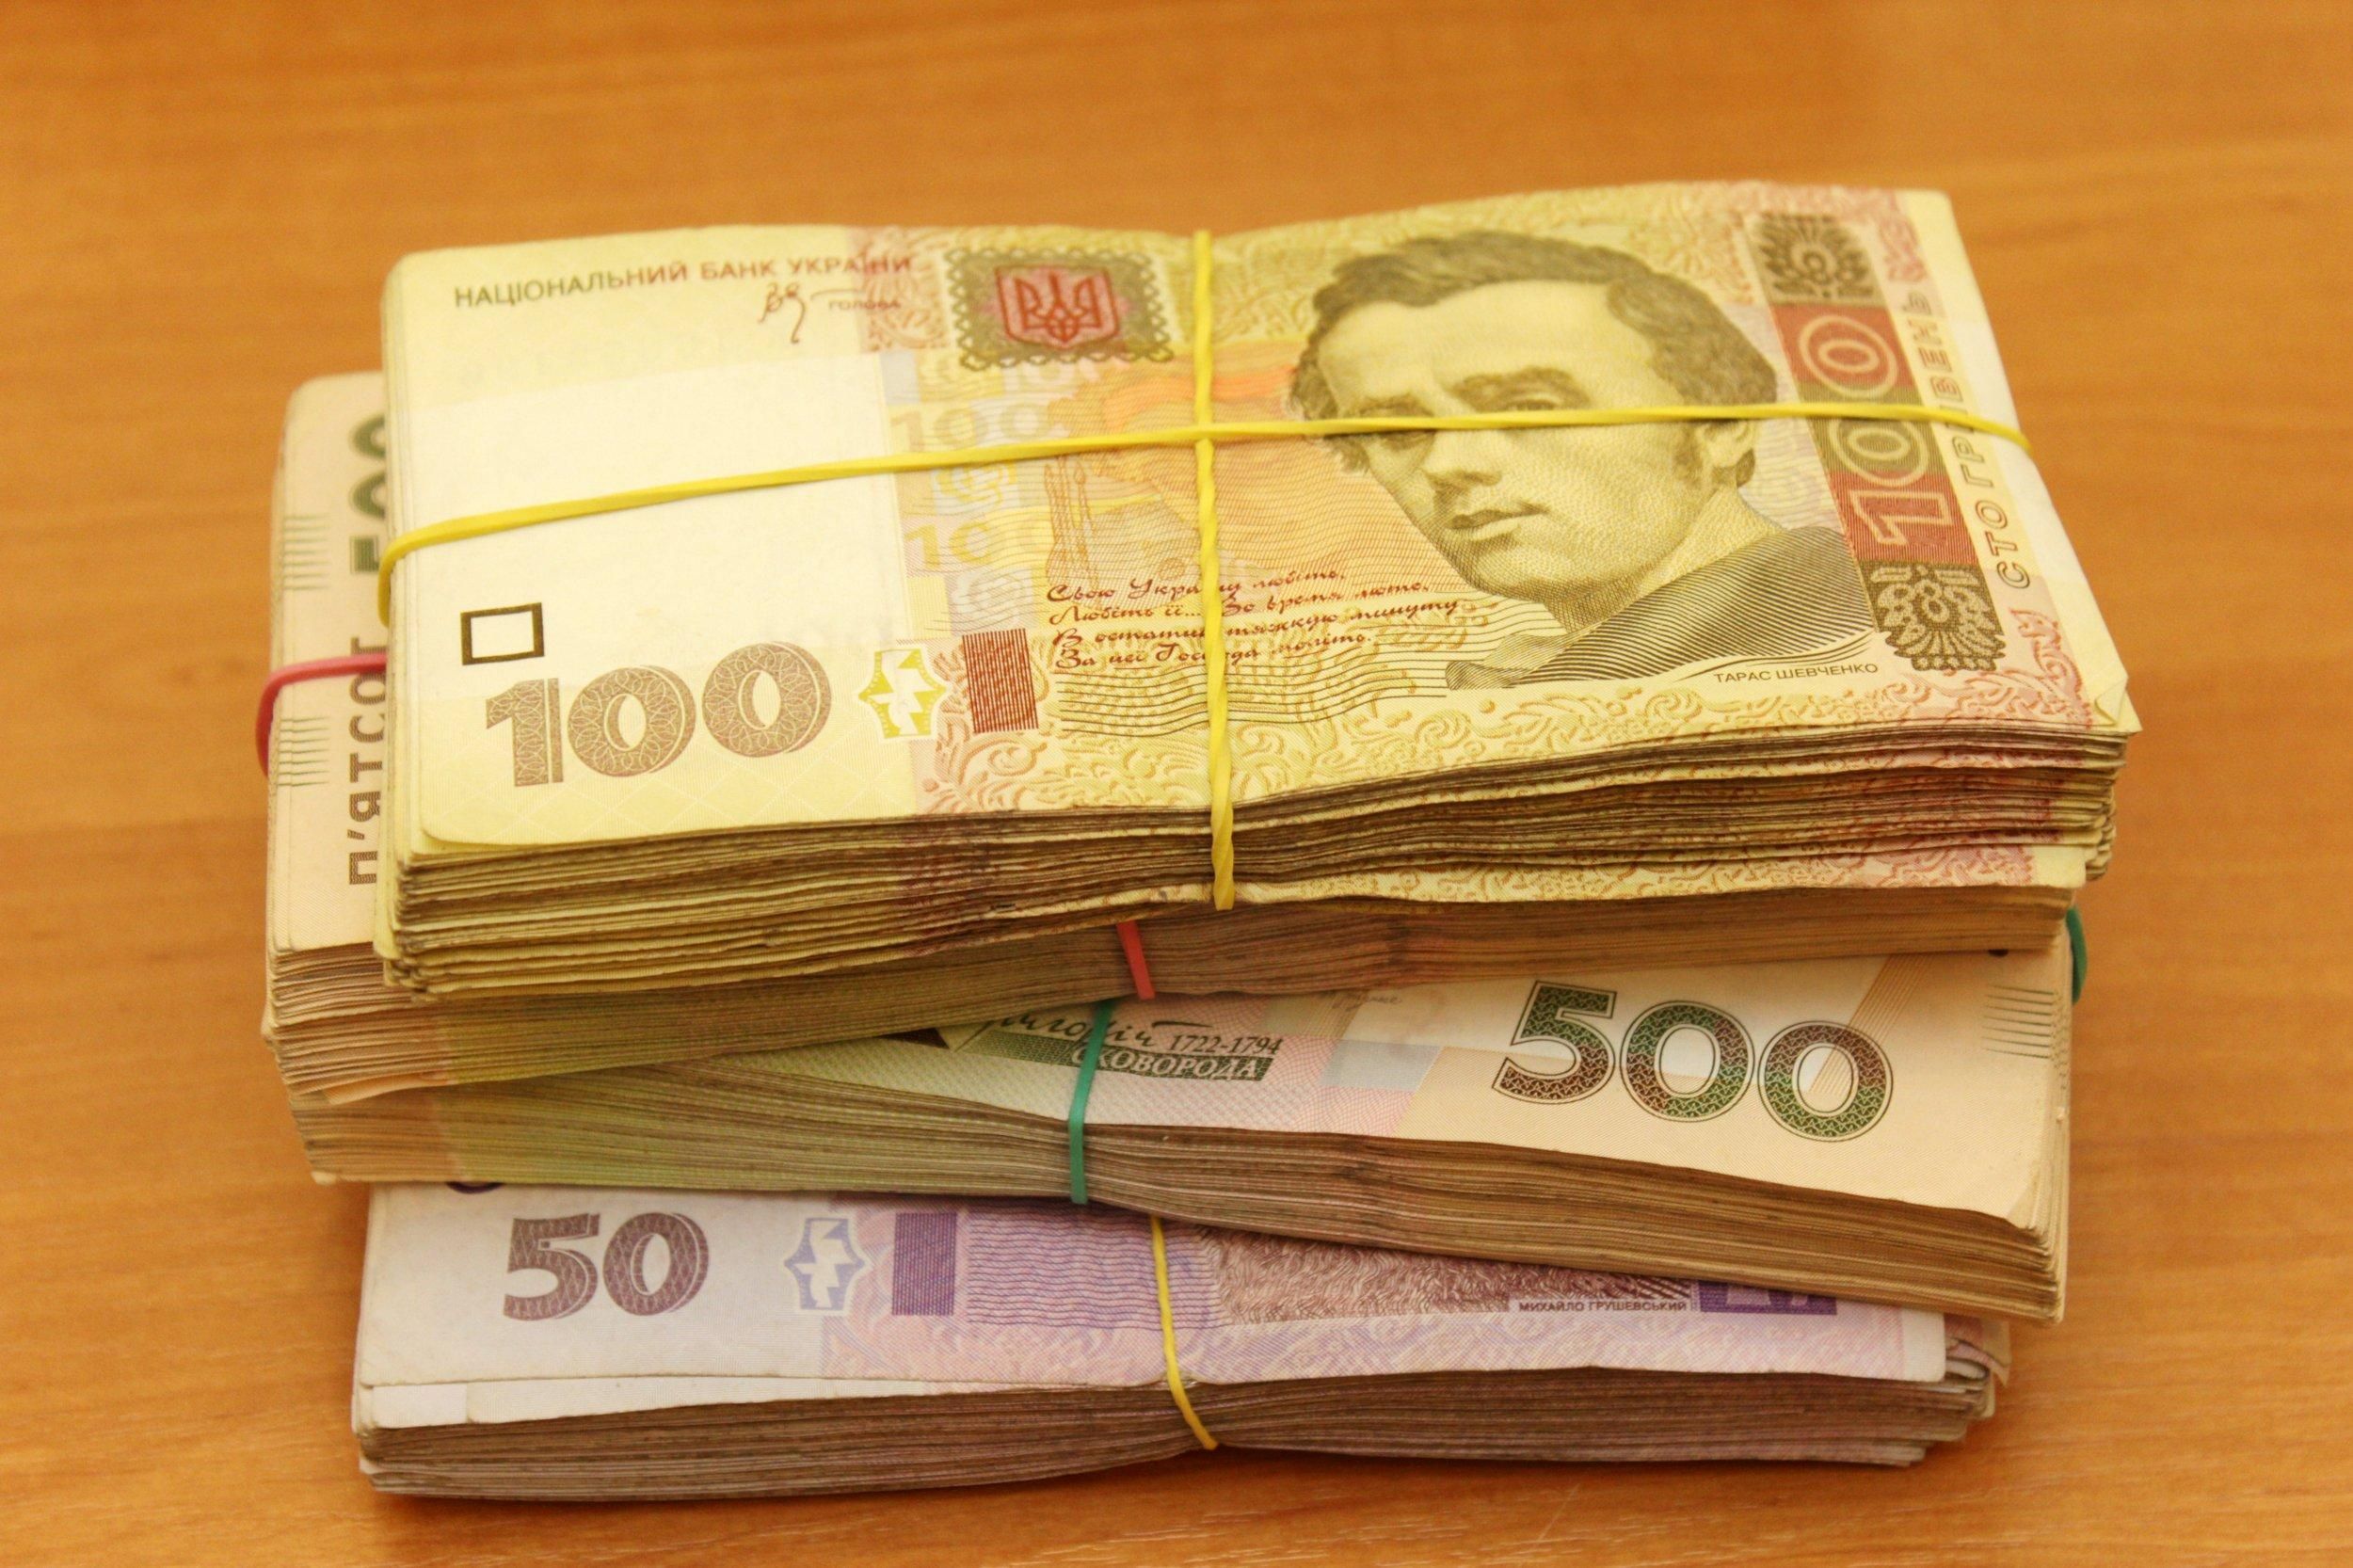 Які банкноти найчастіше підробляють в Україні у 2020 році